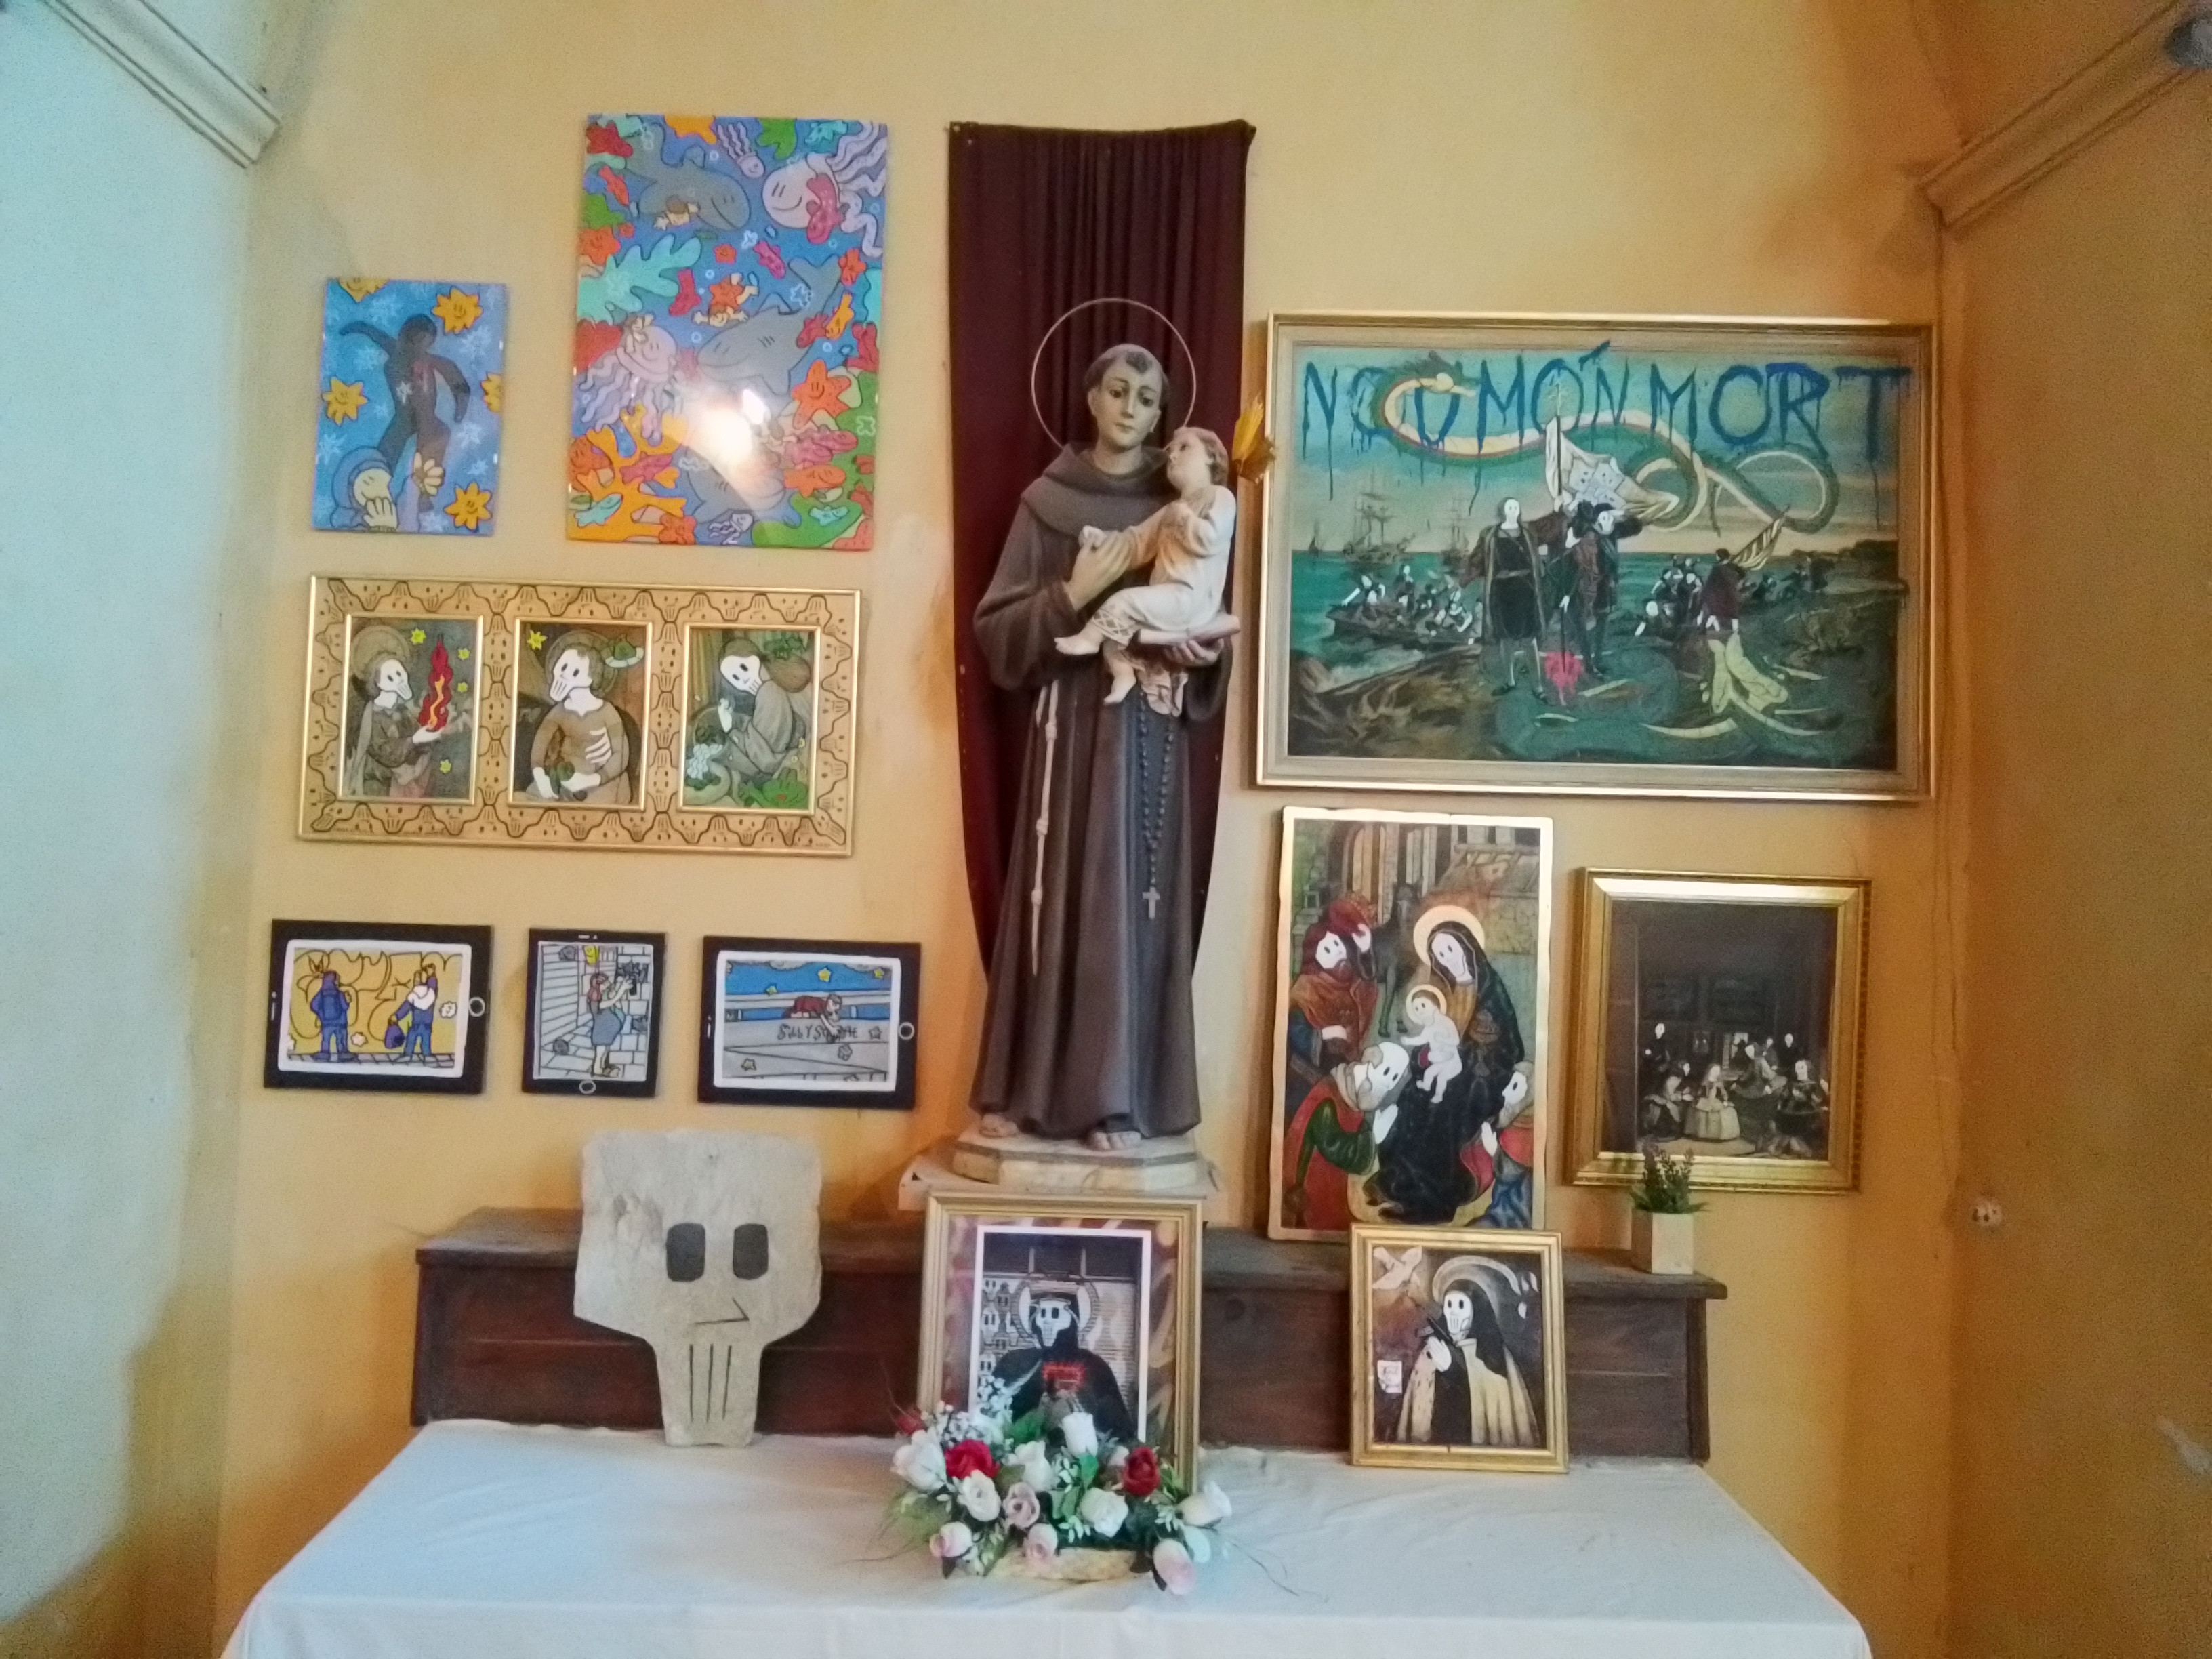 Camil Escruela y la ira món mort en la iglesia de Farrera - GALERIA EFÍMERA LLEIDA